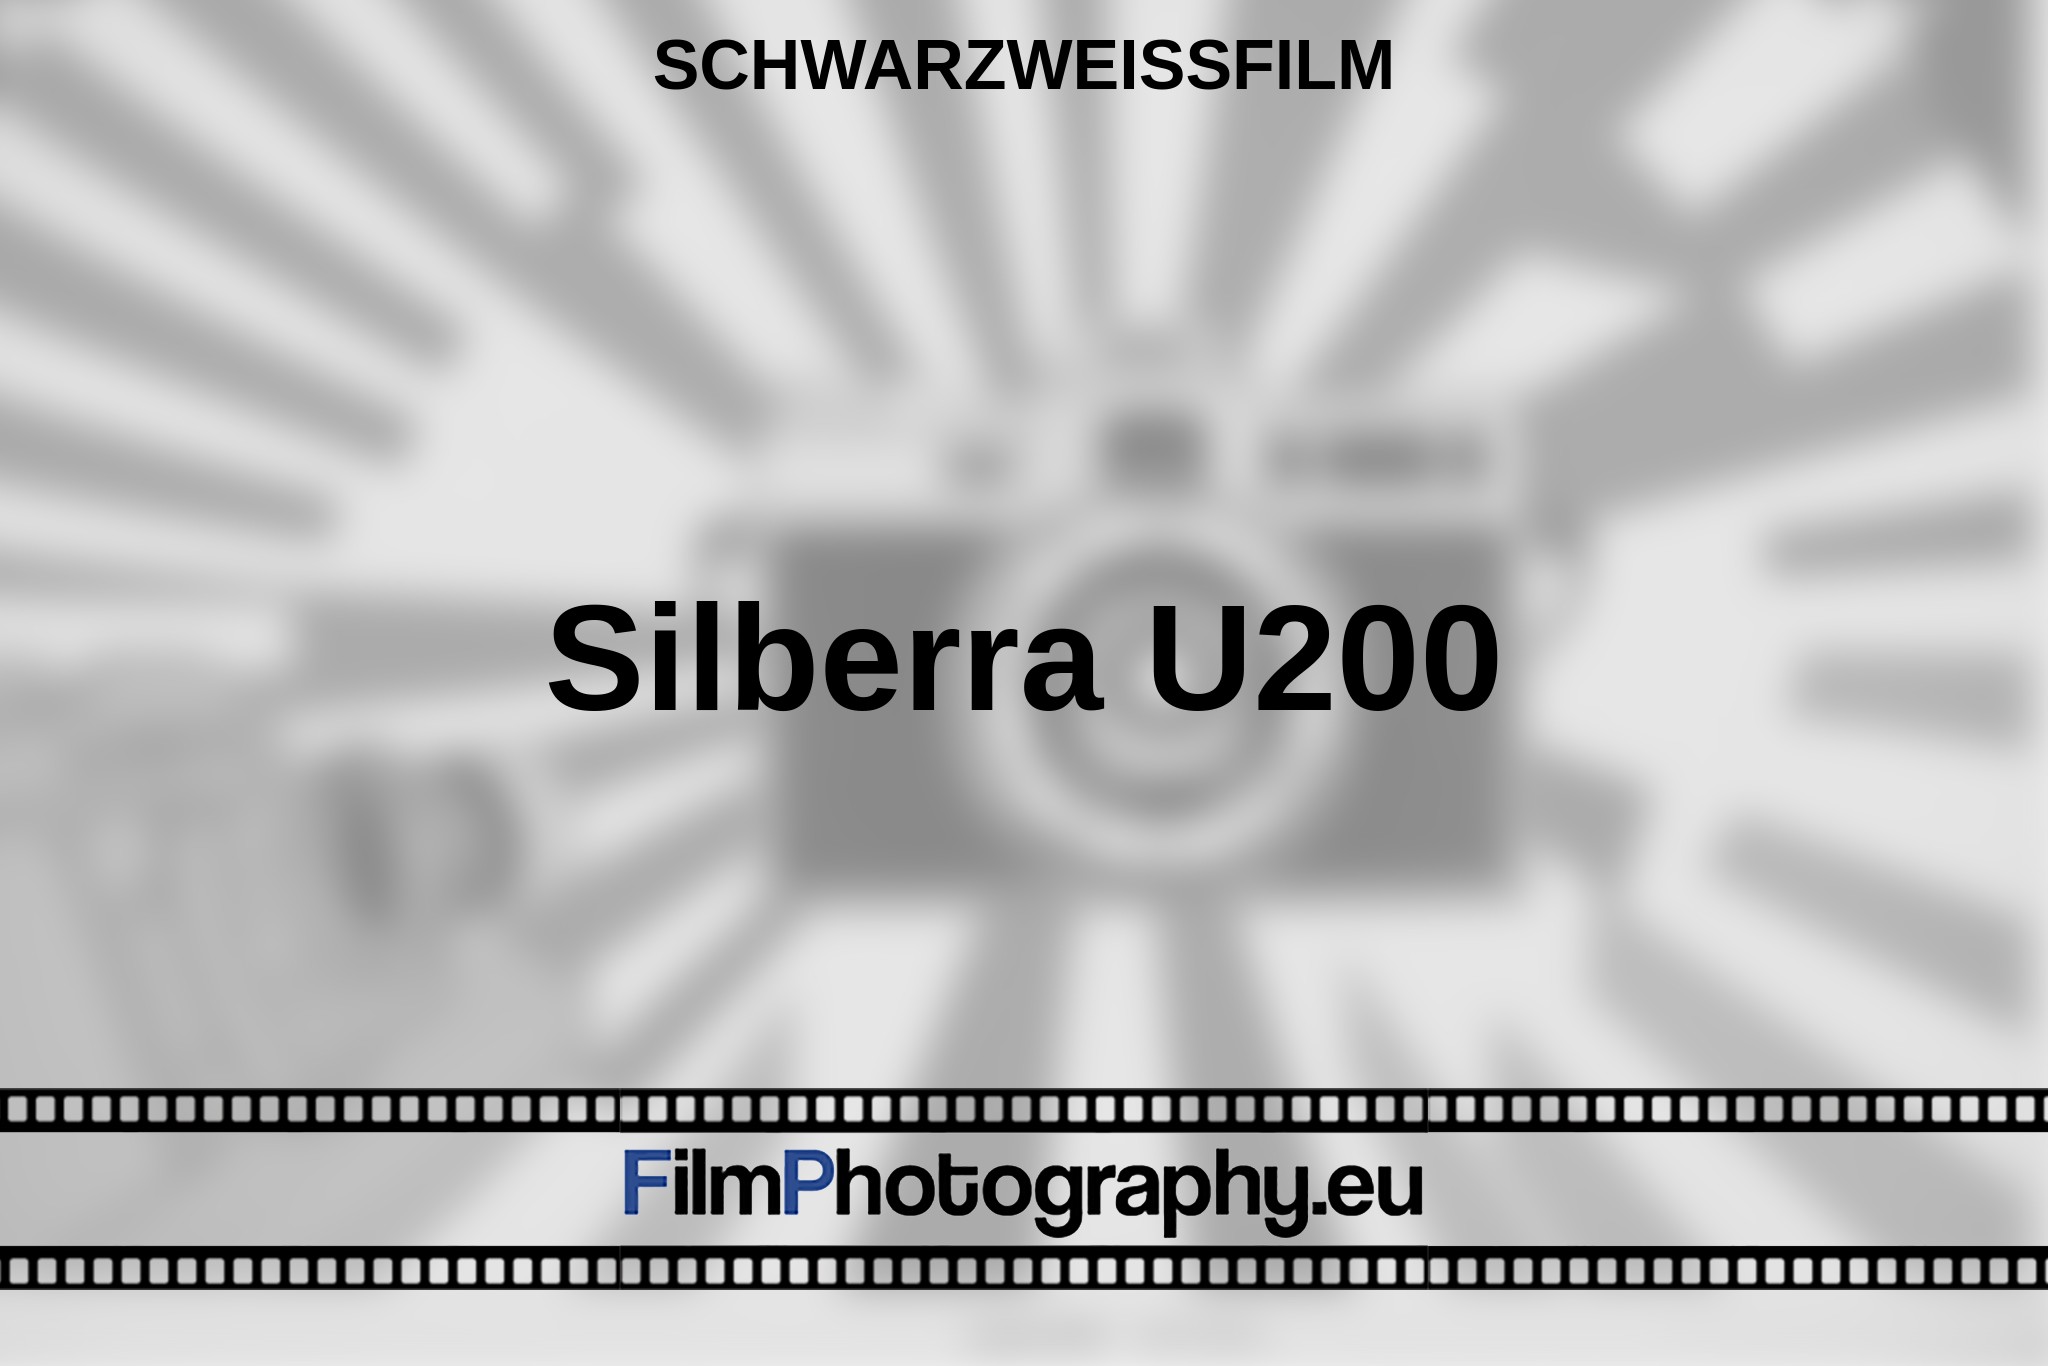 silberra-u200-schwarzweißfilm-bnv.jpg